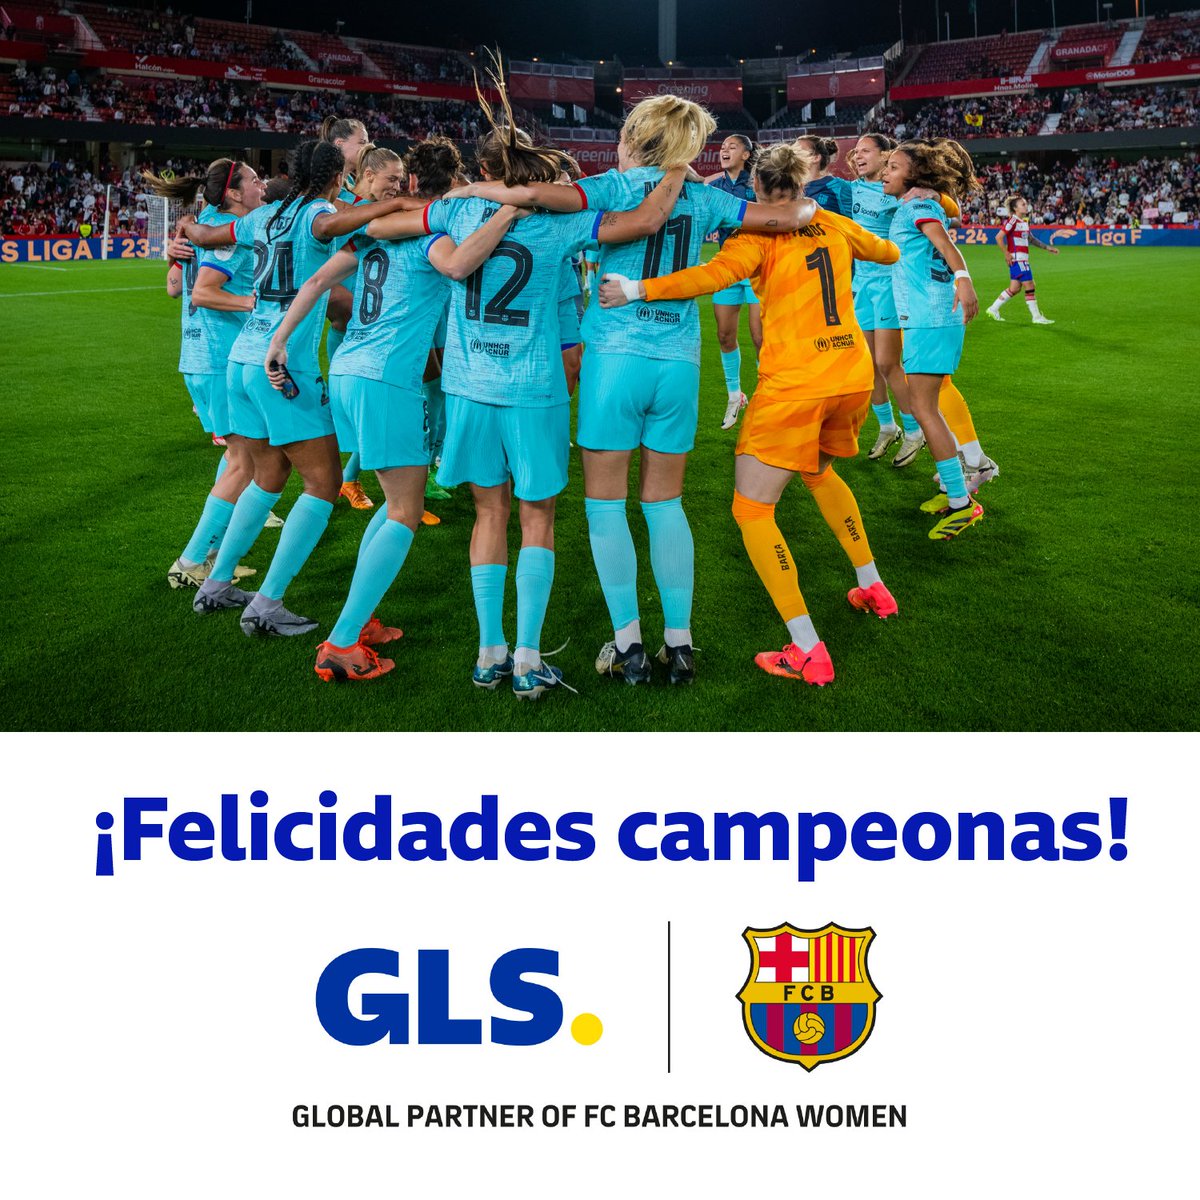 #GLSSpain, orgullosos patrocinadores de las campeonas de la @LigaF_oficial 💙🏆

Quina sort estar amb vosaltres, noies 🎉

#GLSSpain #ParcelstoPeople #Campeonas #FutbolFemenino @FCBfemeni